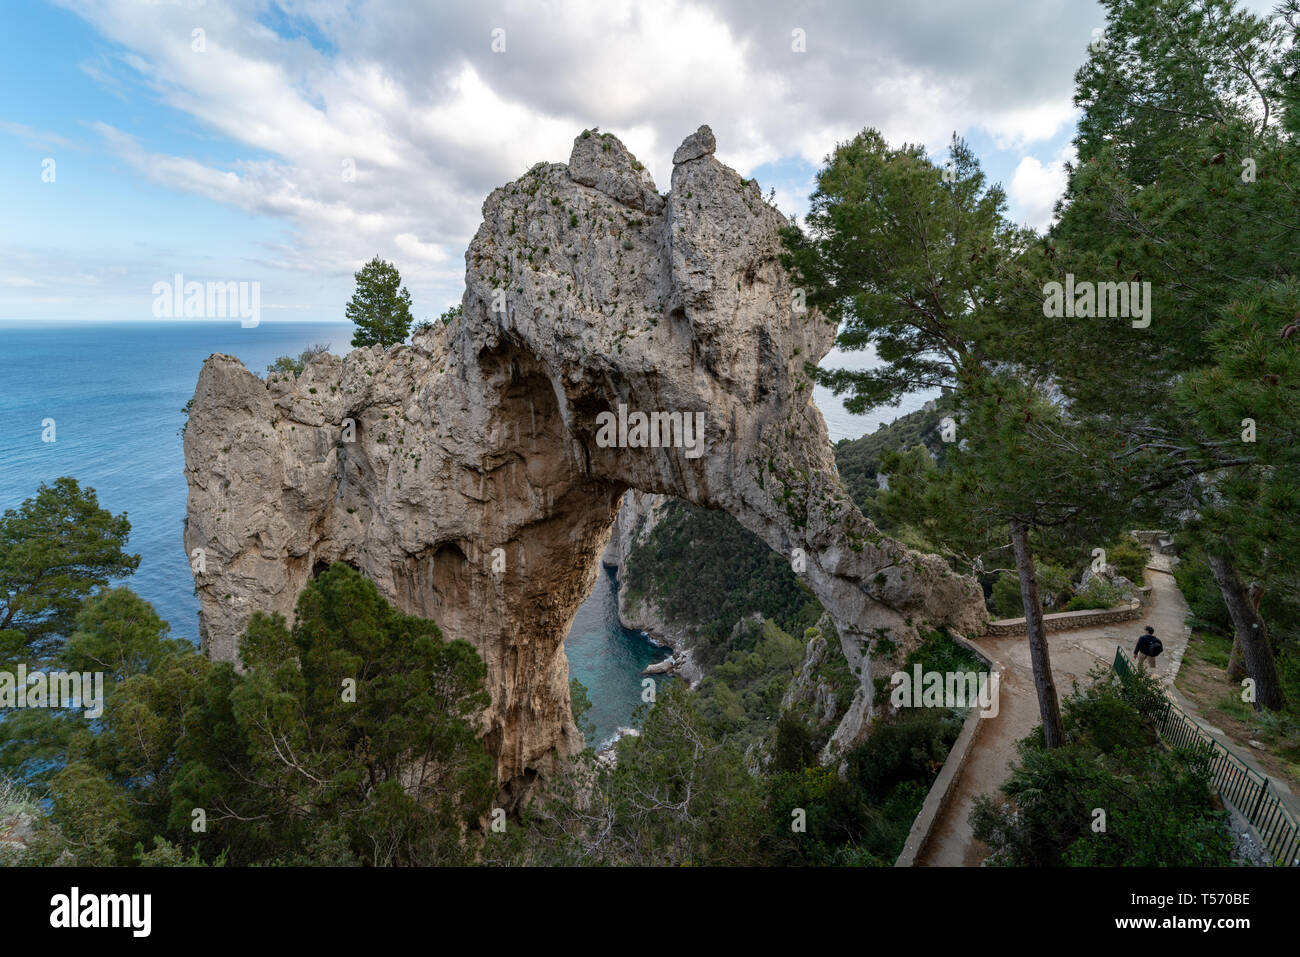 Arco Naturale, scolpito nella roccia da fenomeni di erosione e probabilmente dal crollo di una preesistente grotta, Pizzolungo, Capri Stock Photo